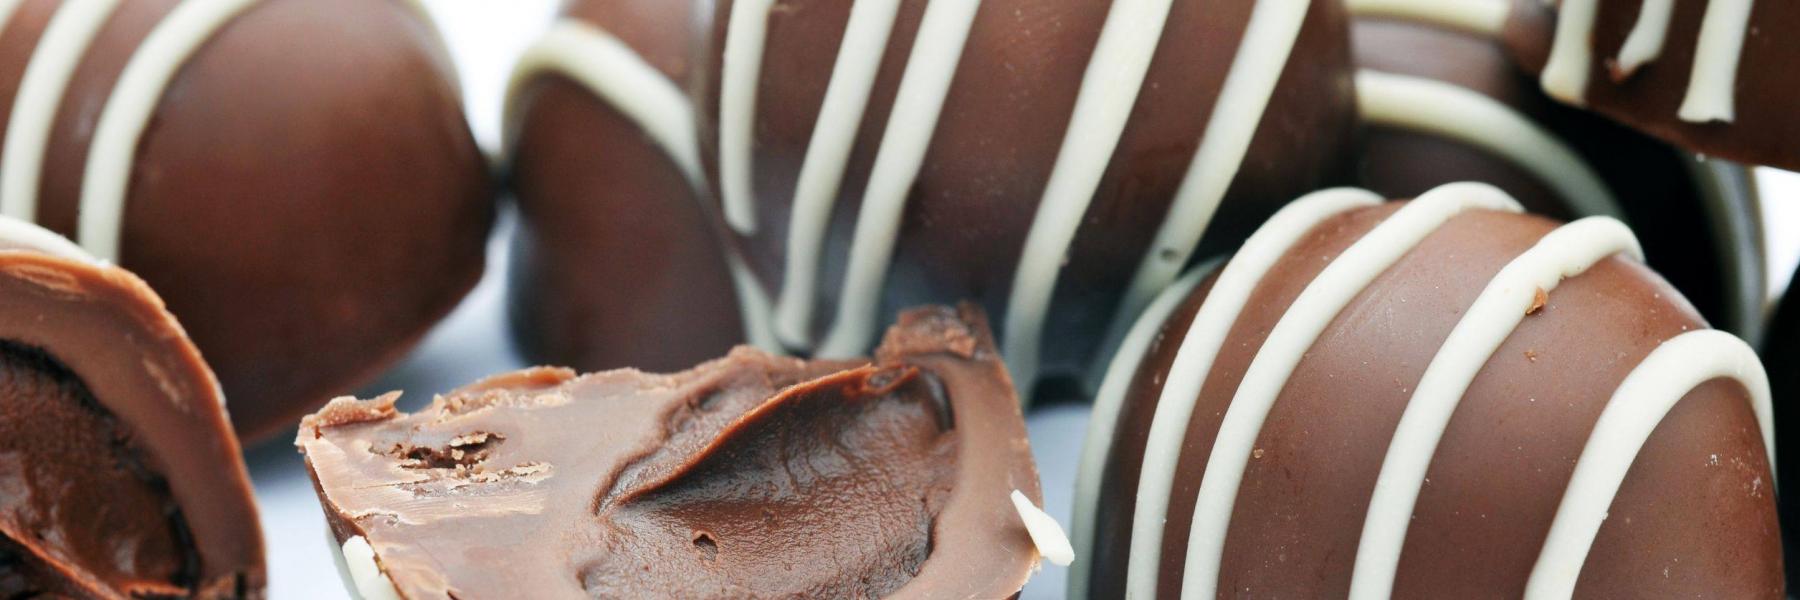 طريقة عمل كرات الشوكولاته بالبسكويت